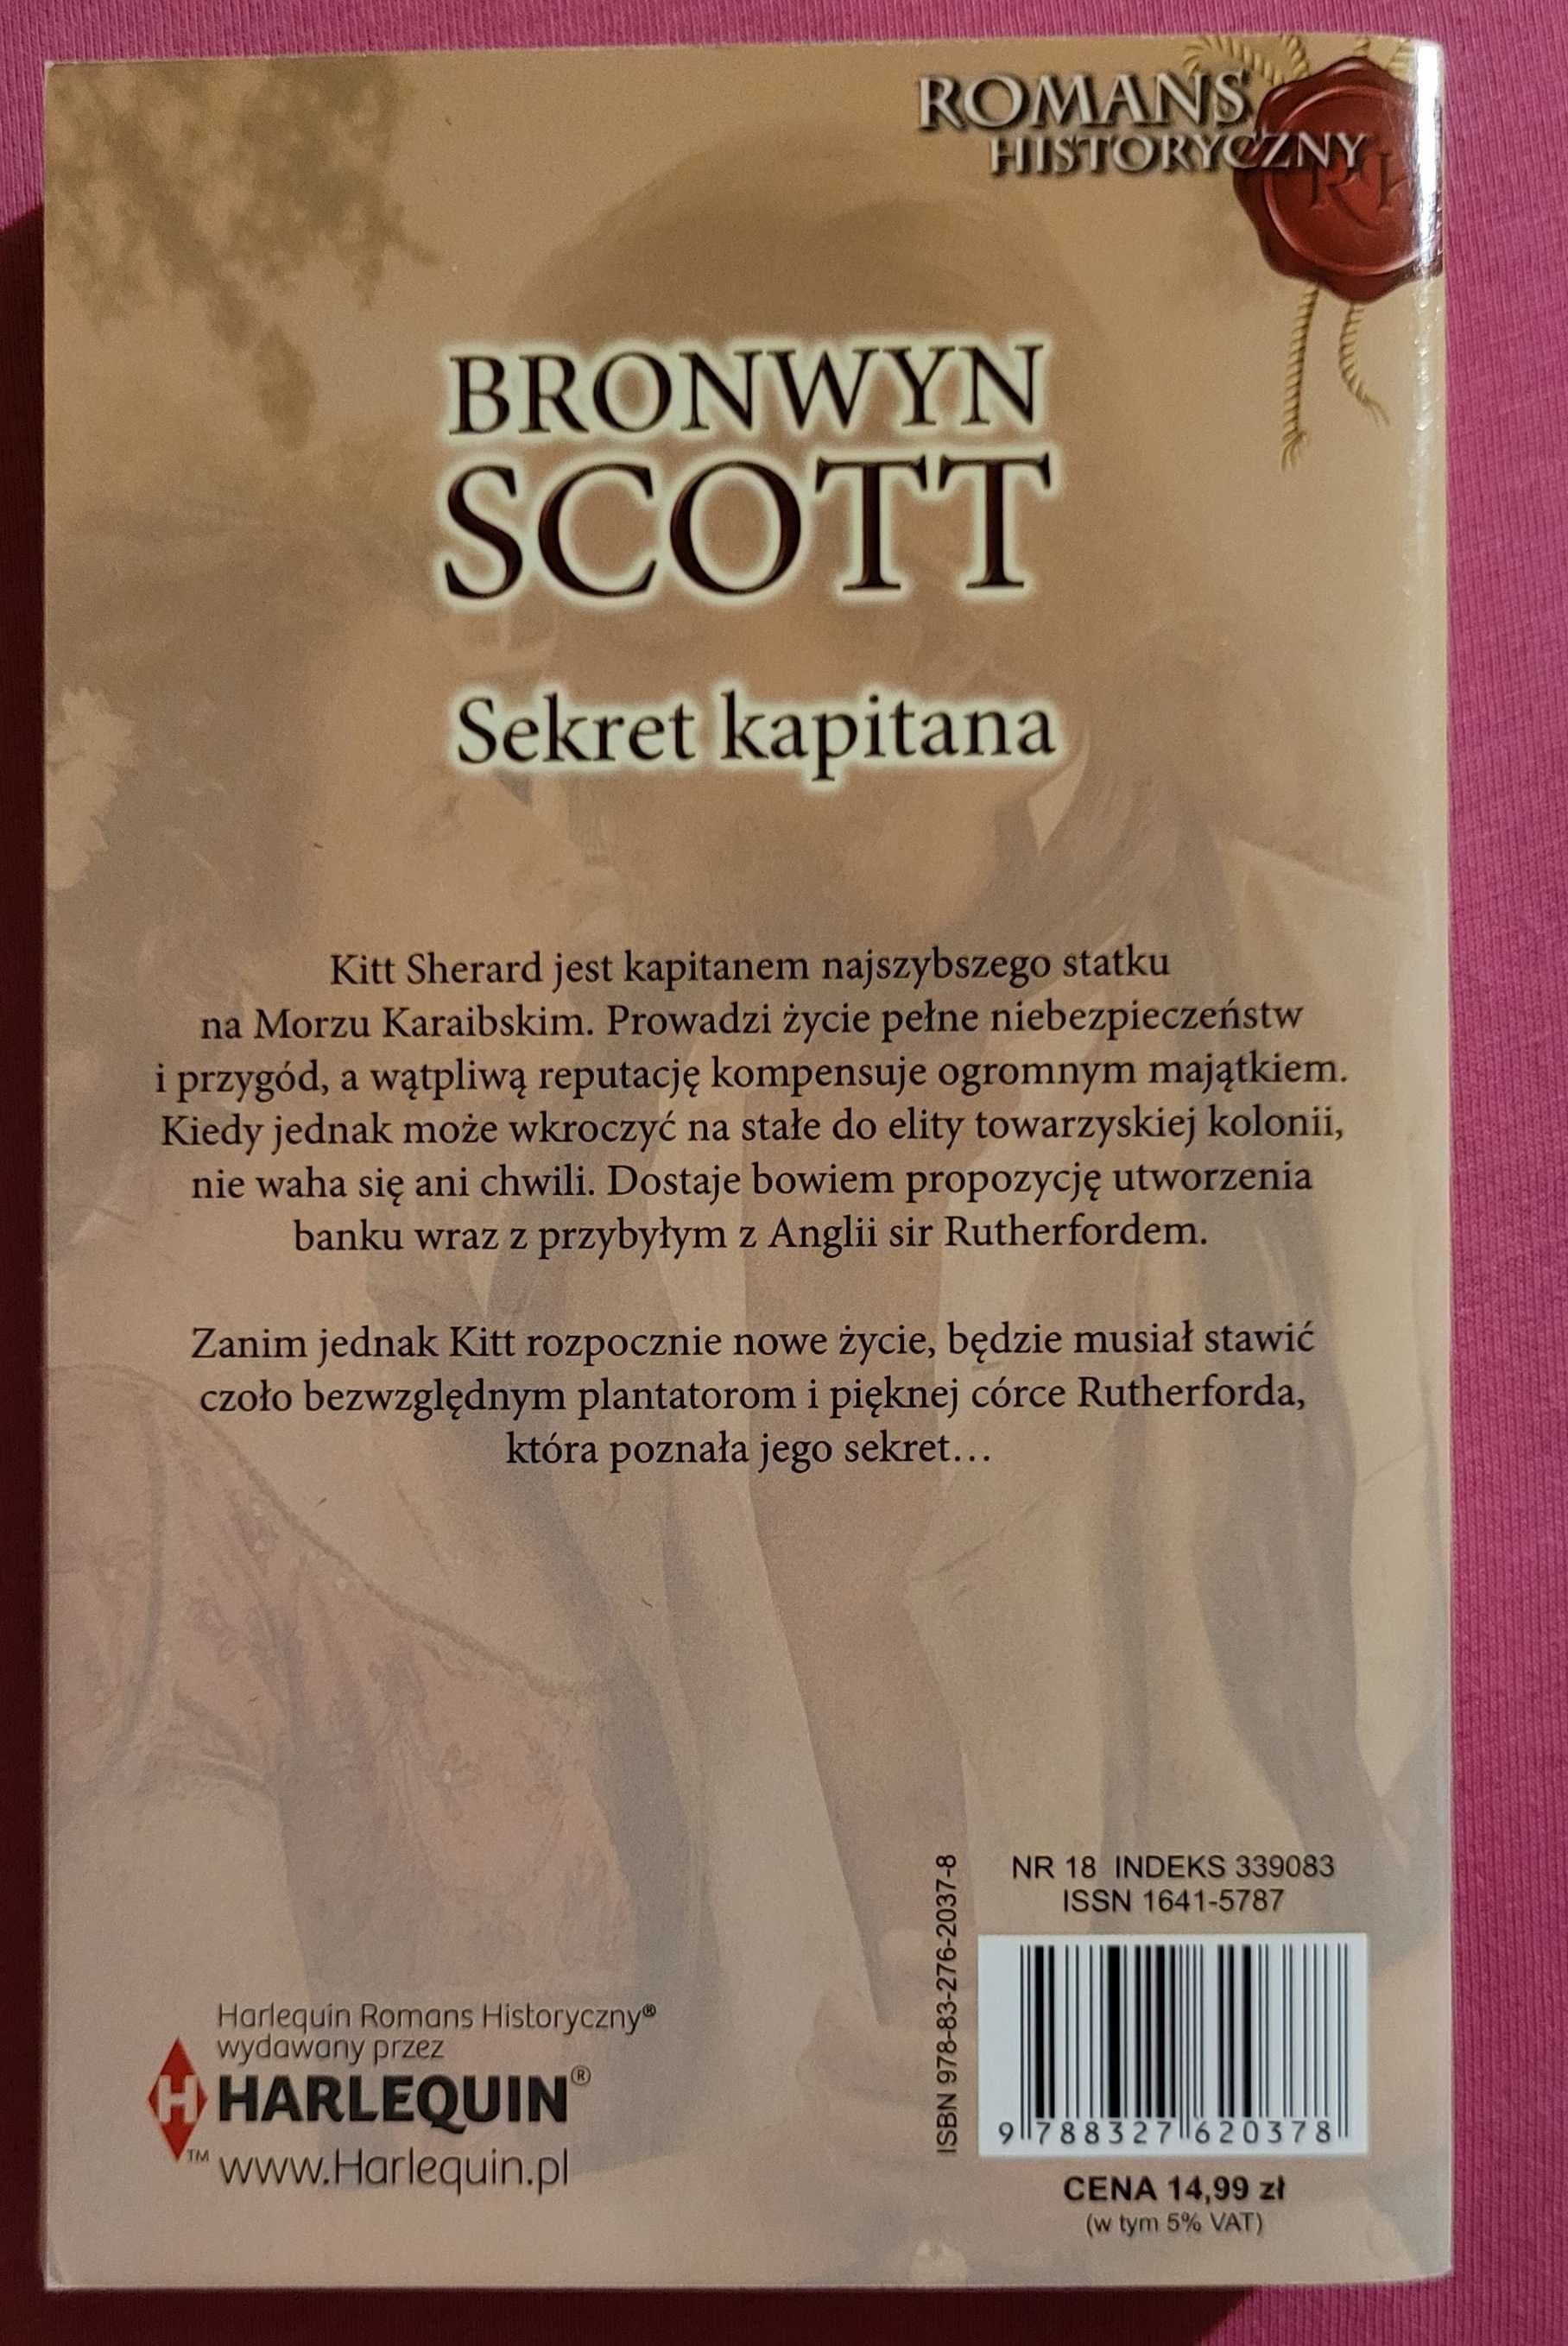 Romans historyczny HARLEQUINA "Sekret kapitana" B.Scott nr 454 (2)